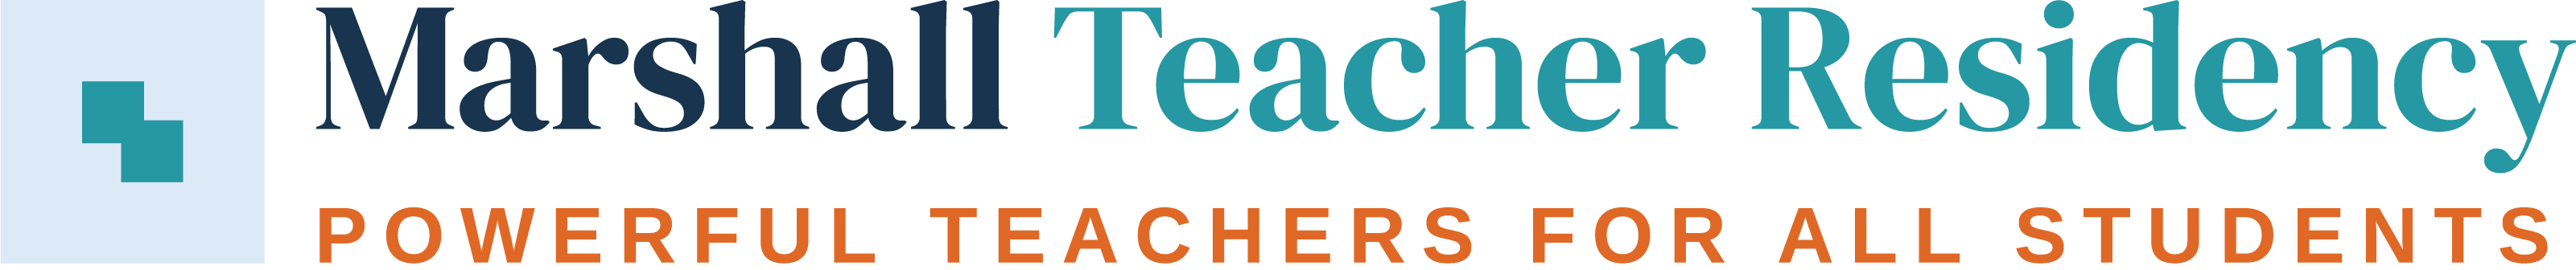 Marshall Teacher Residency logo